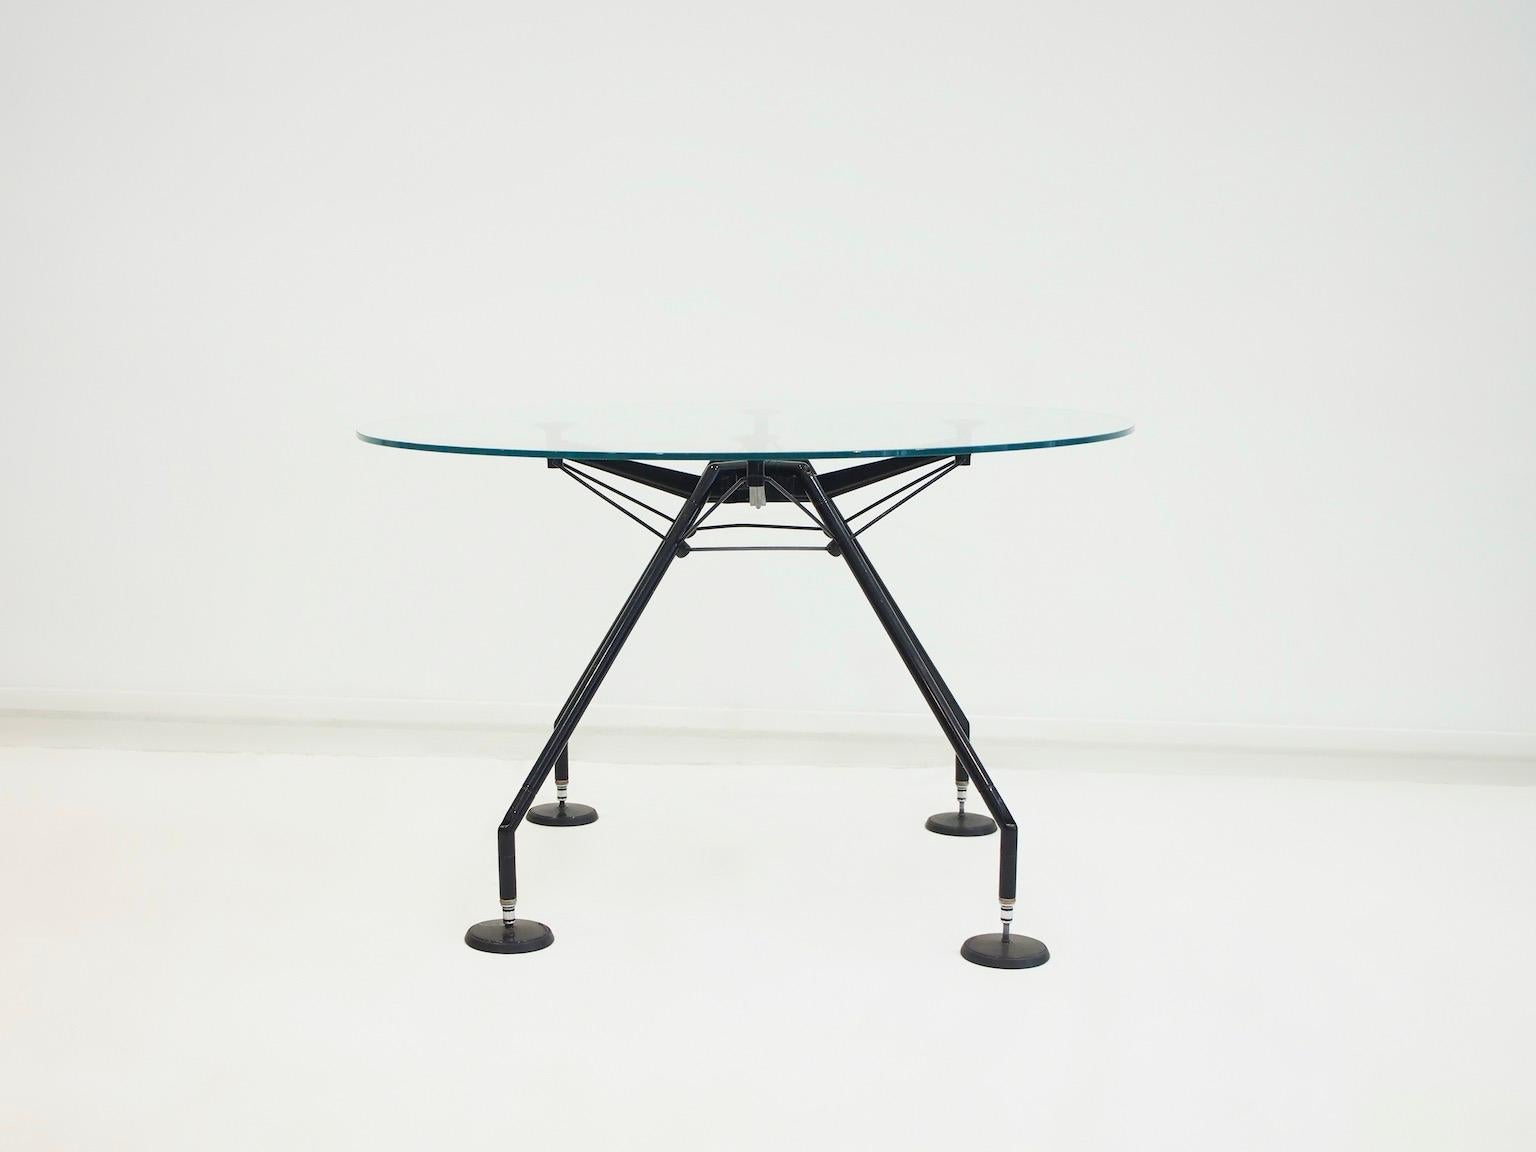 Runder Tisch, Modell Nomos, Entwurf von Sir Norman Foster & Partner für Tecno, Italien. Entworfen im Jahr 1986. Schwarz lackiertes Metall, Kunststoff. Lose Klarglasplatte. Marke des Herstellers. Geringe Gebrauchsspuren.